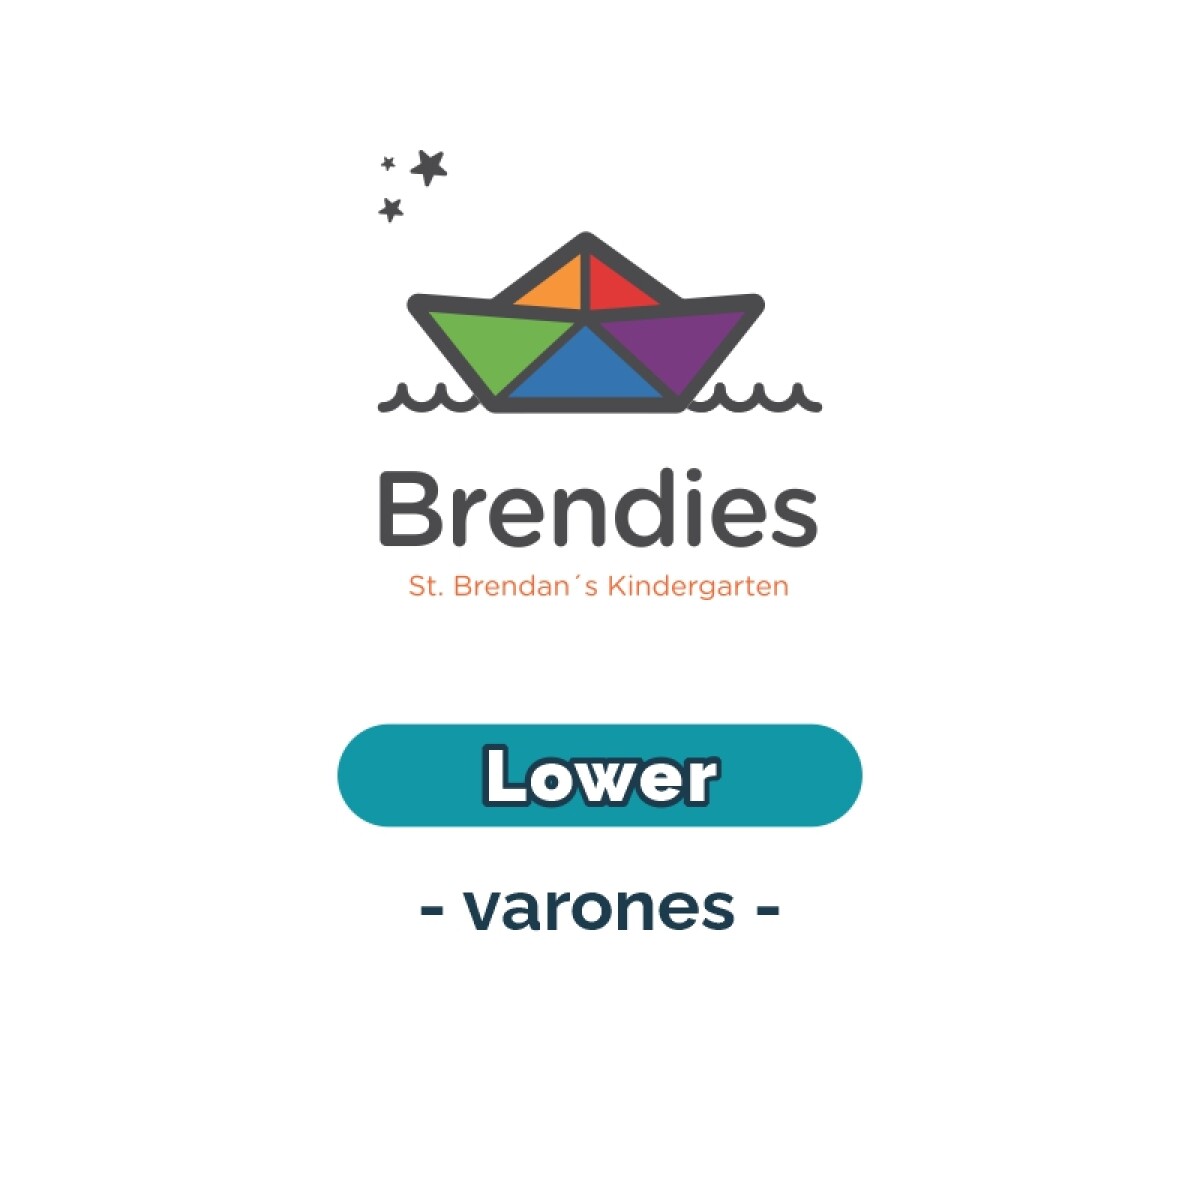 Lista de materiales - Brendies Lower varones SB 